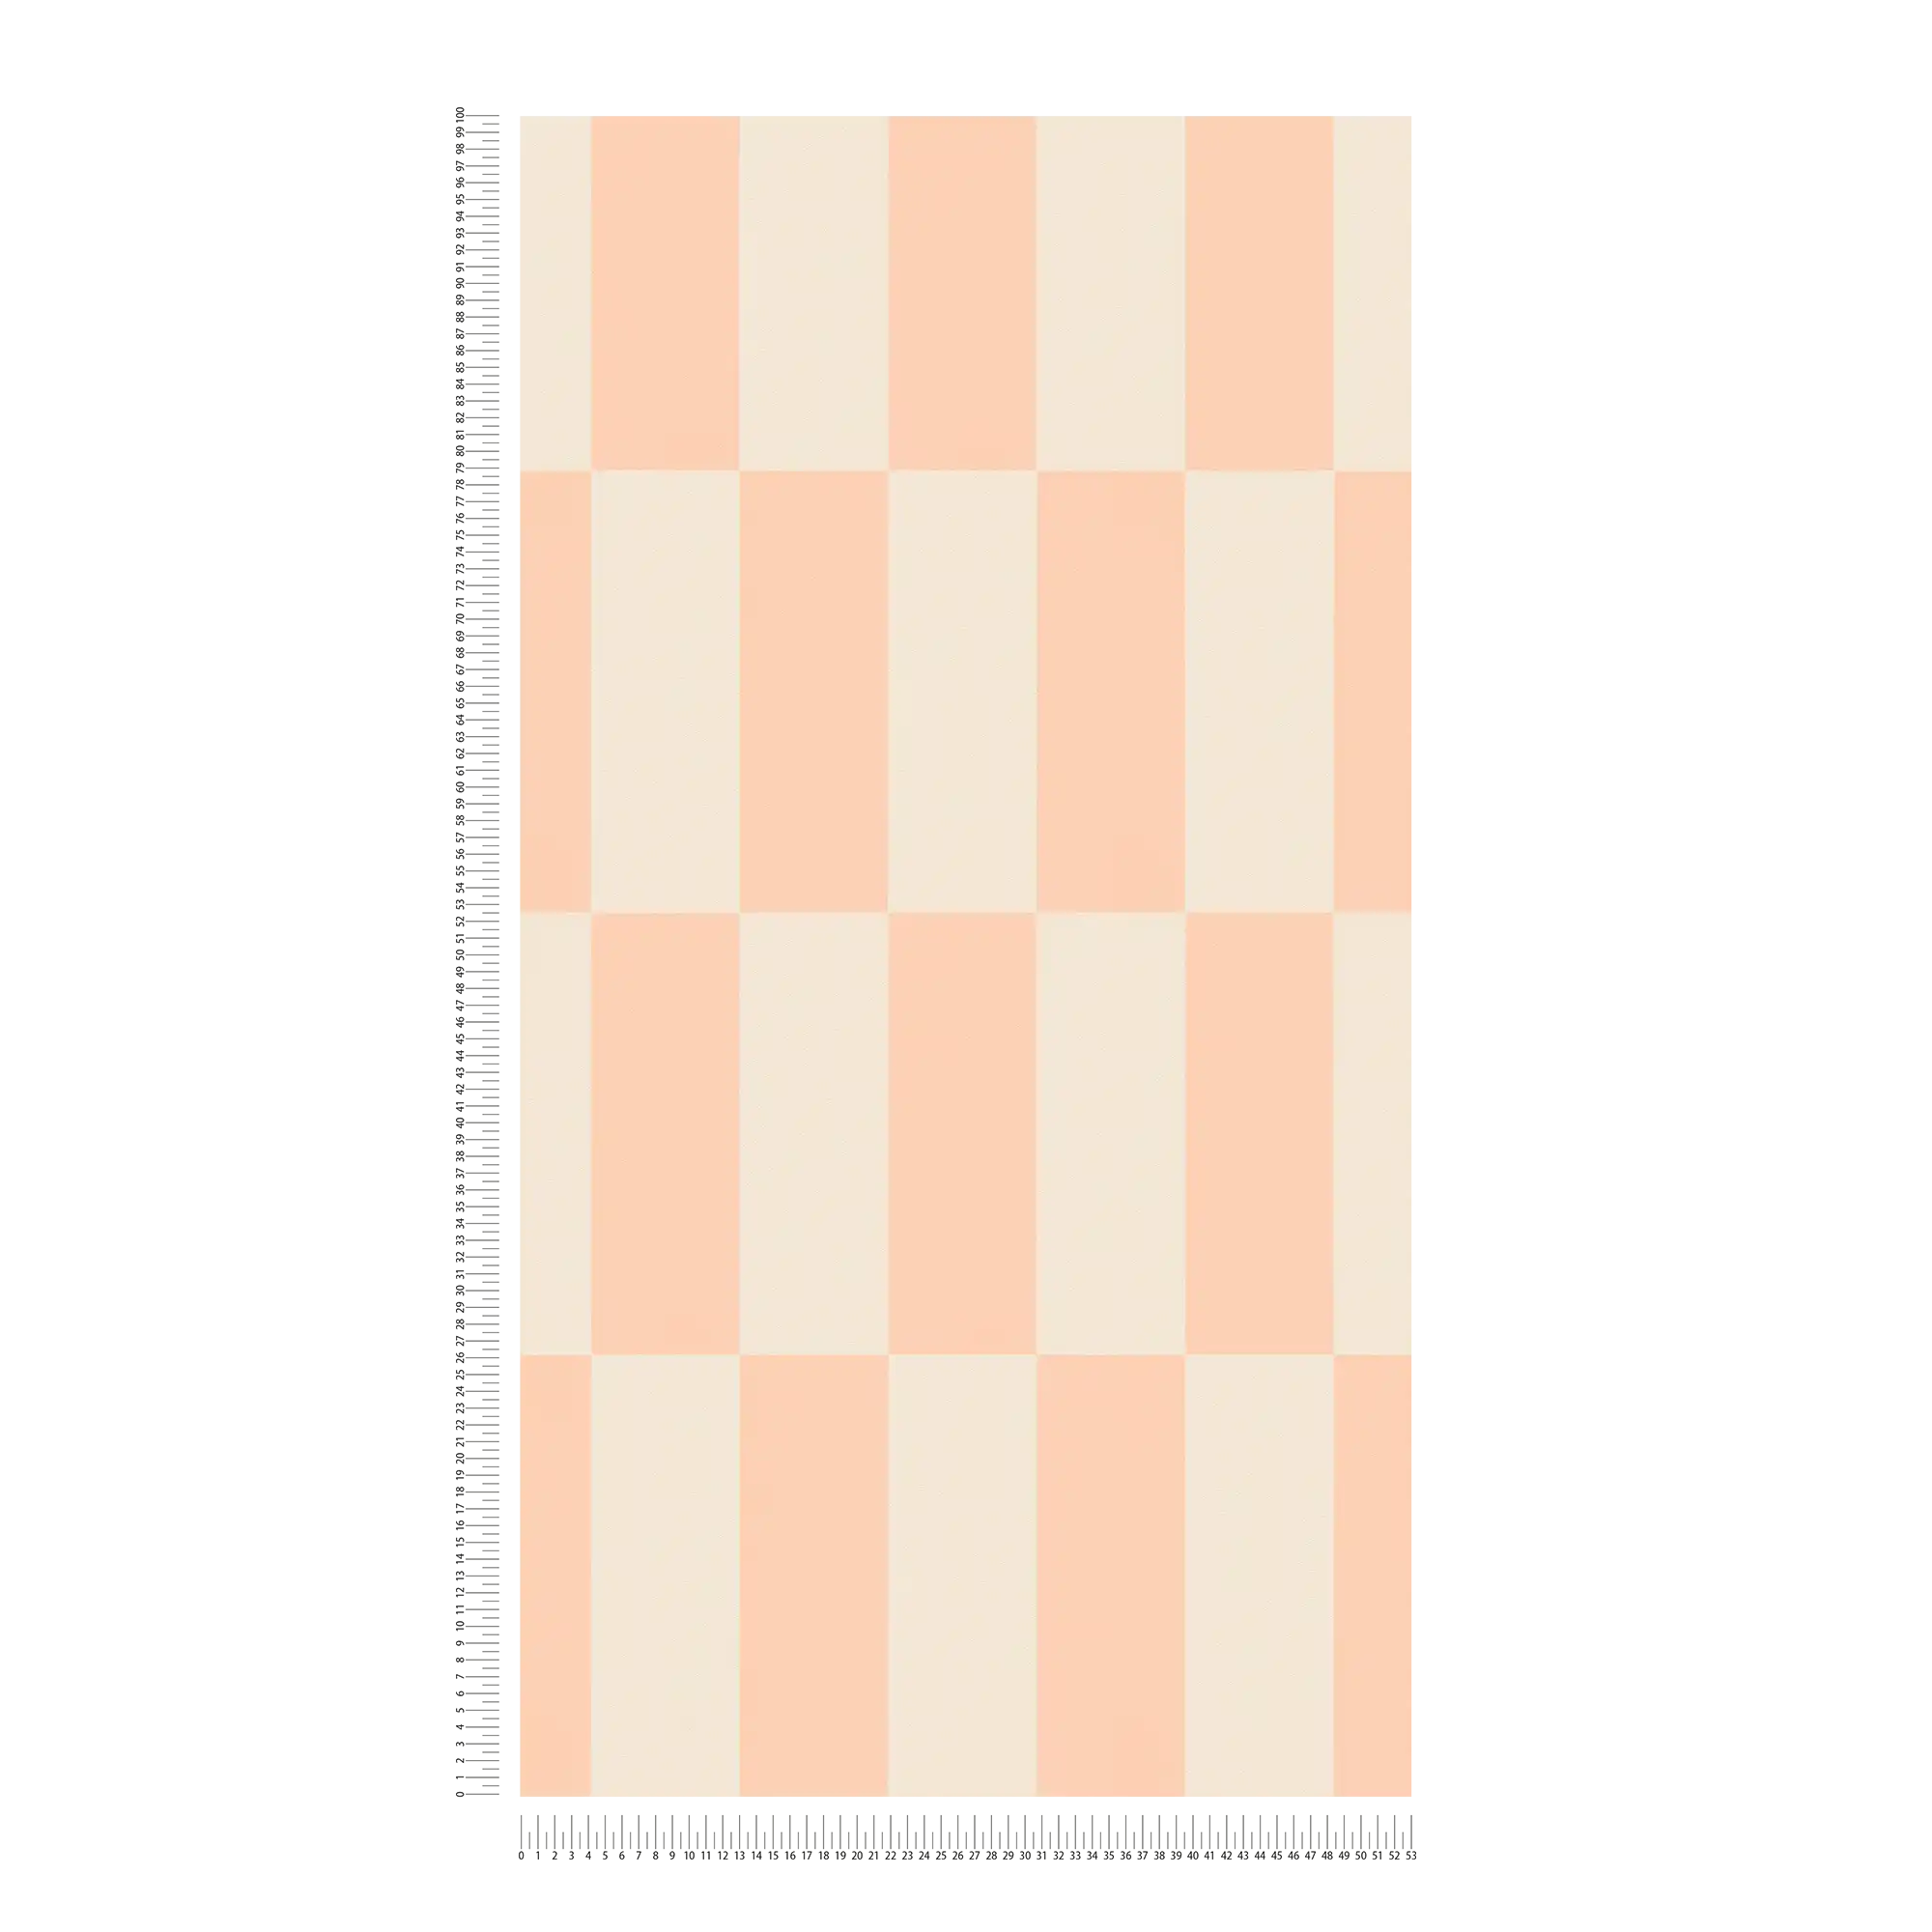             Carta da parati in tessuto non tessuto con motivo grafico a rettangoli - crema, rosa
        